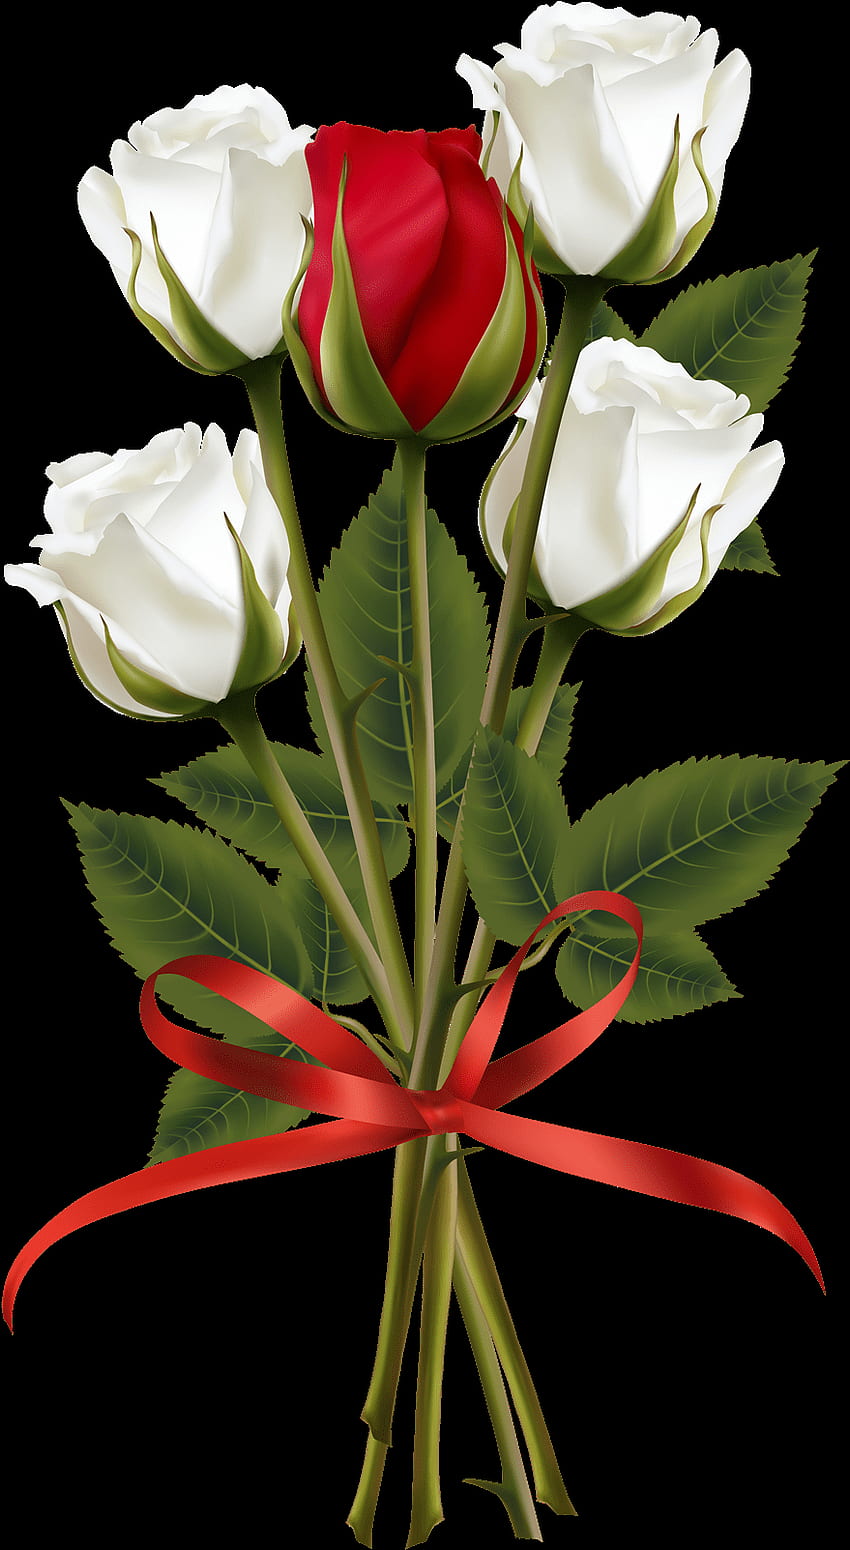 Flower Frame, Flower Art, White Roses, Red Roses, Red - Red And White ...